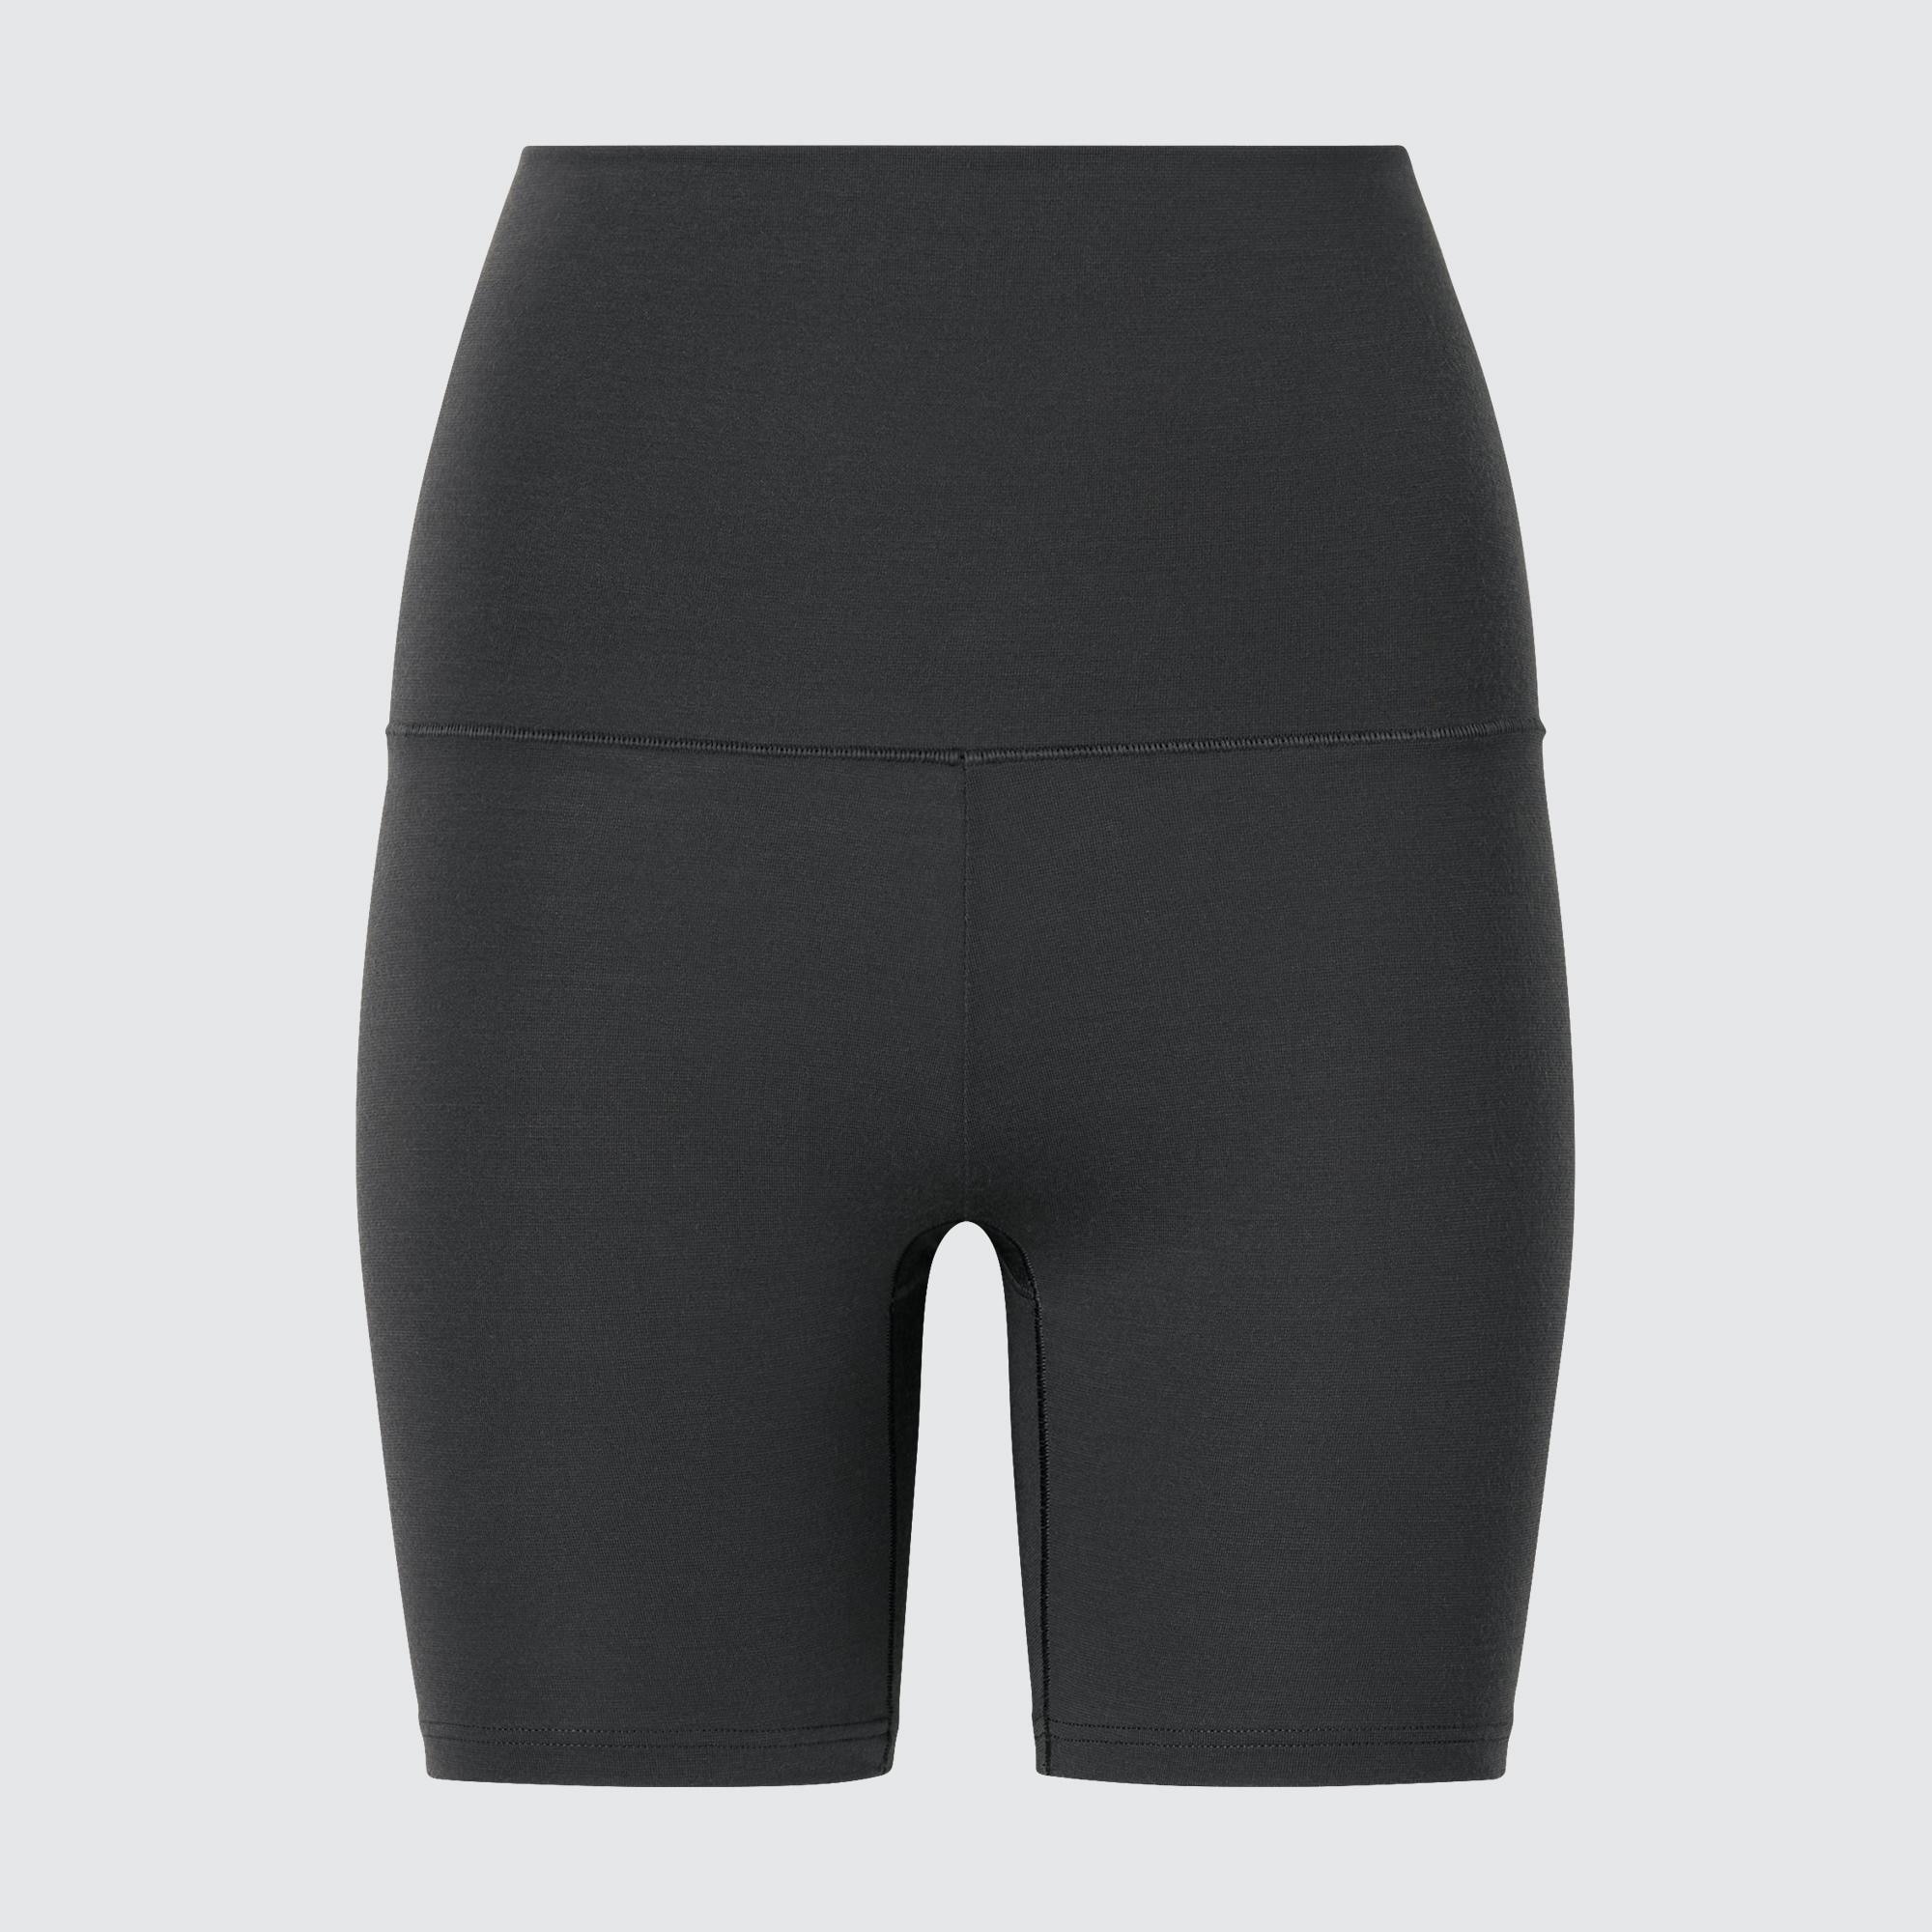 Шорты Uniqlo Heattech Waist Warm, темно-серый брюки uniqlo windproof extra warm lined темно серый